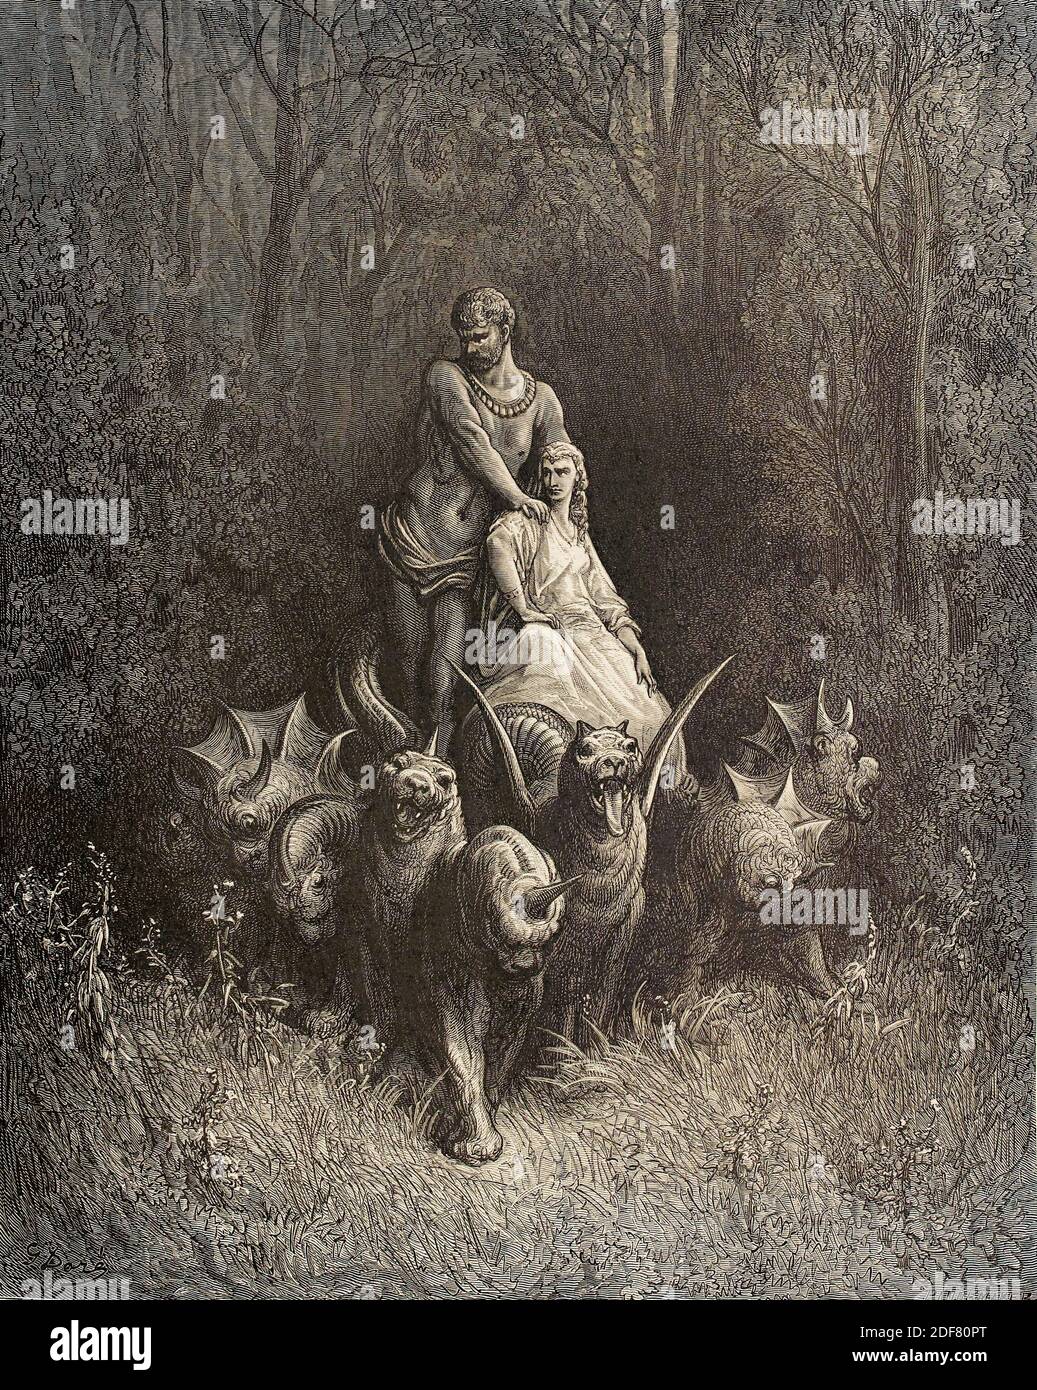 Dante - Divina Commedia - Purgatorio - Illustrazione di Gustave Dorè - canto XXXII - il gigante e la prostituta Foto Stock